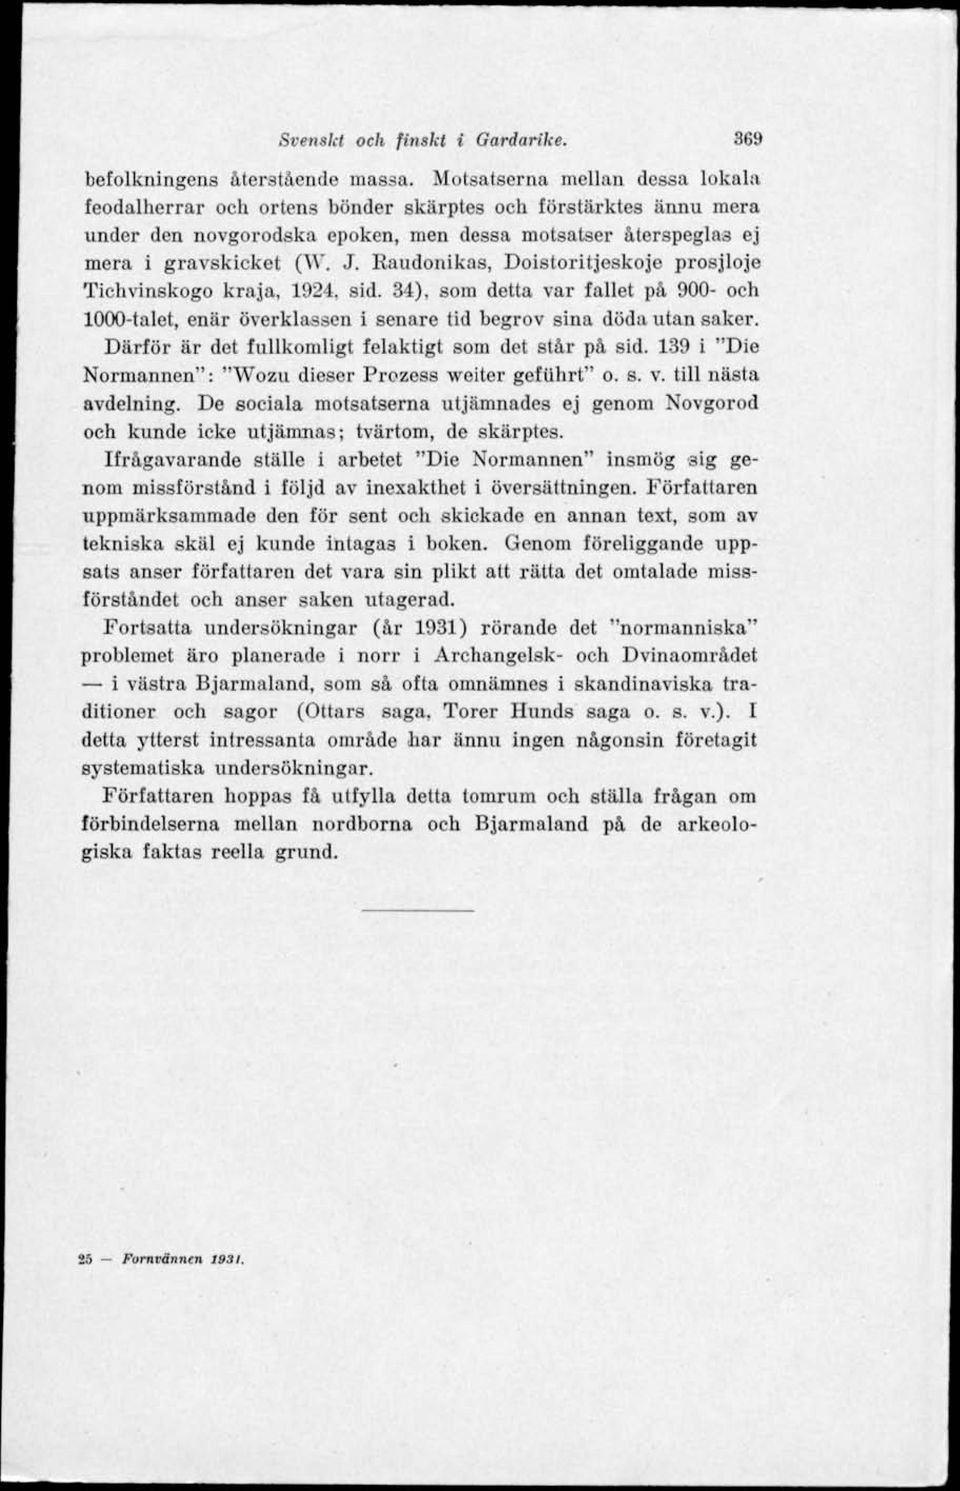 Raudonikas, Doistoritjeskoje prosjloje Tichvinskogo kraja, 1924. sid. 34), som detta var fallet på 900- och 1000-talet, enär överklassen i senare tid begrov sina döda utan saker.